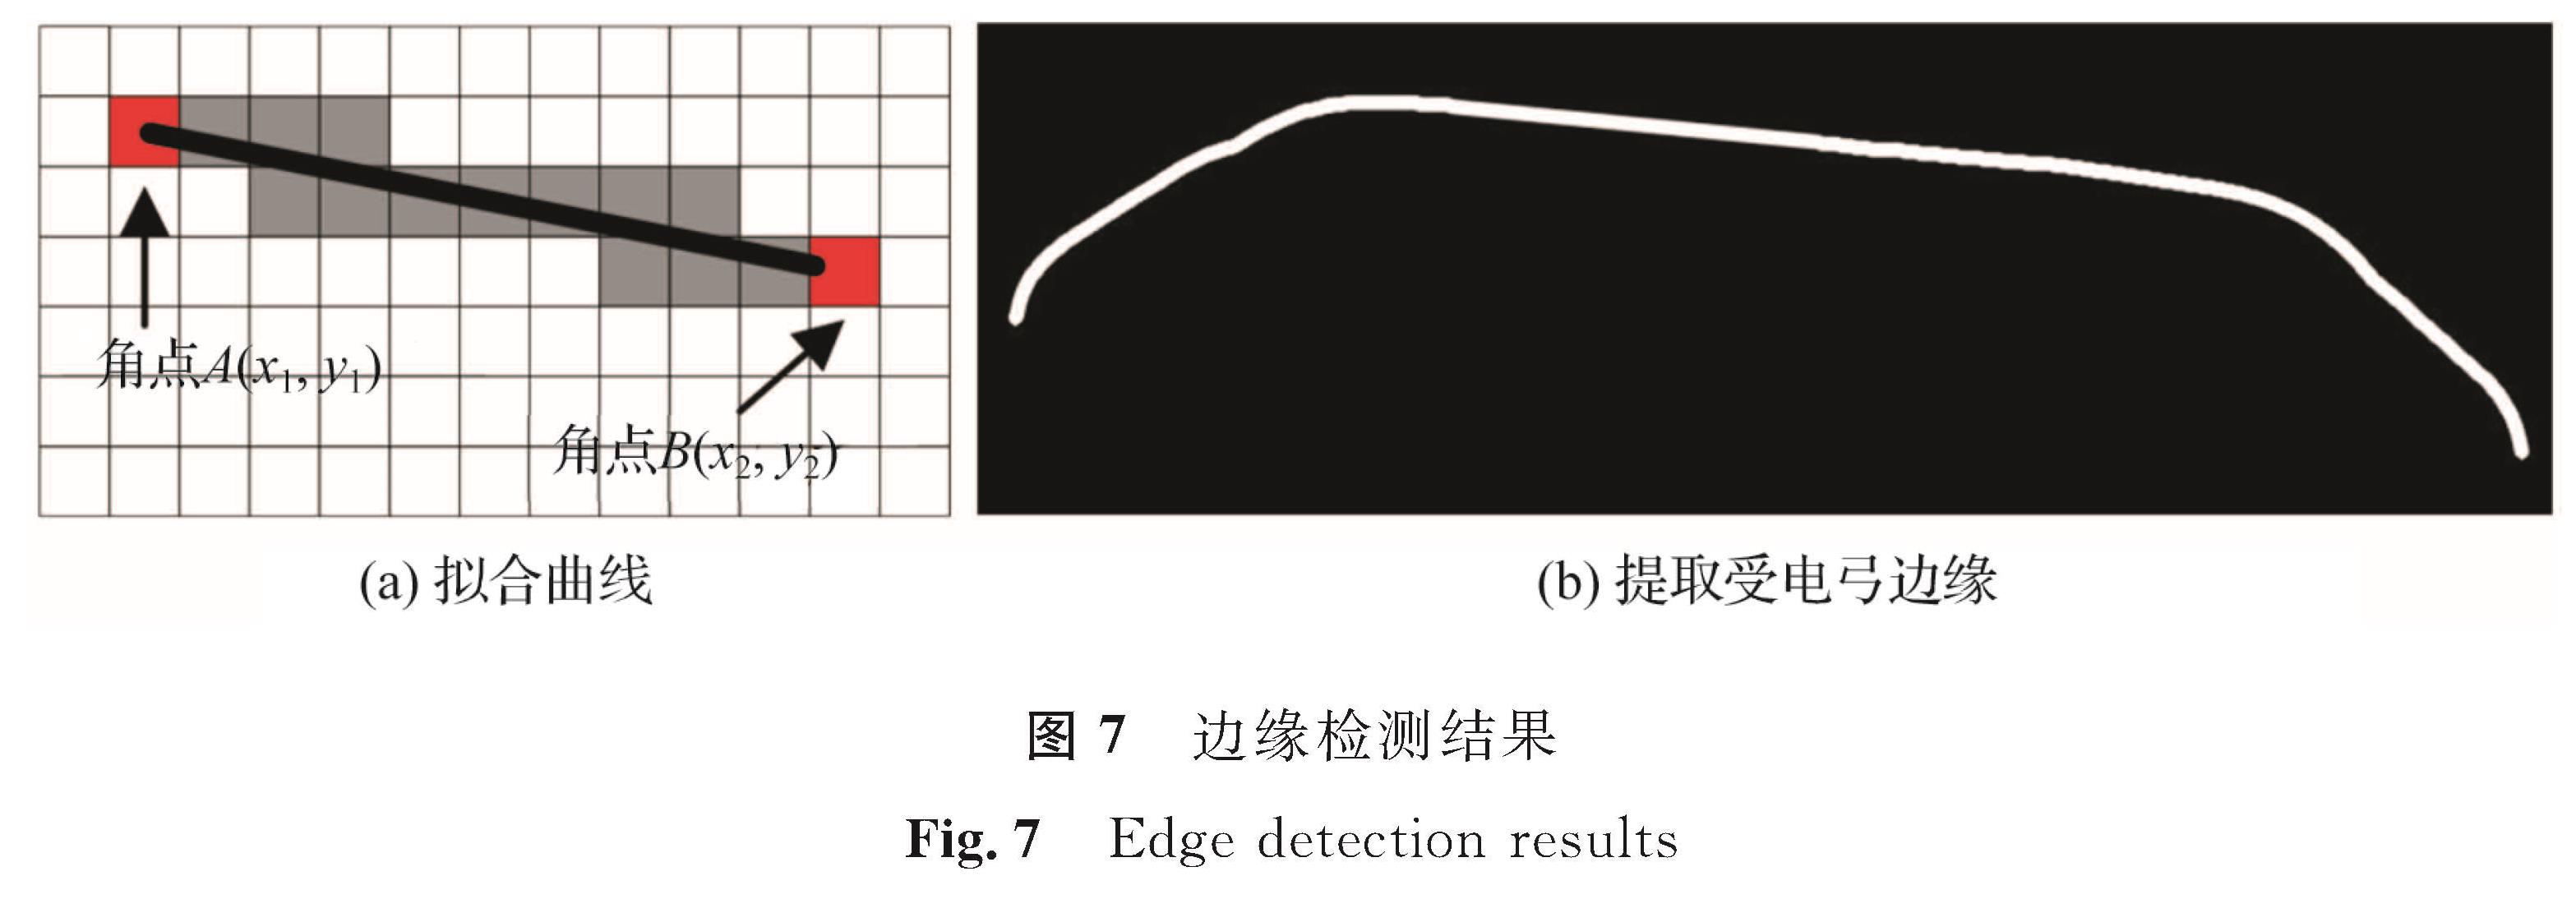 图7 边缘检测结果<br/>Fig.7 Edge detection results